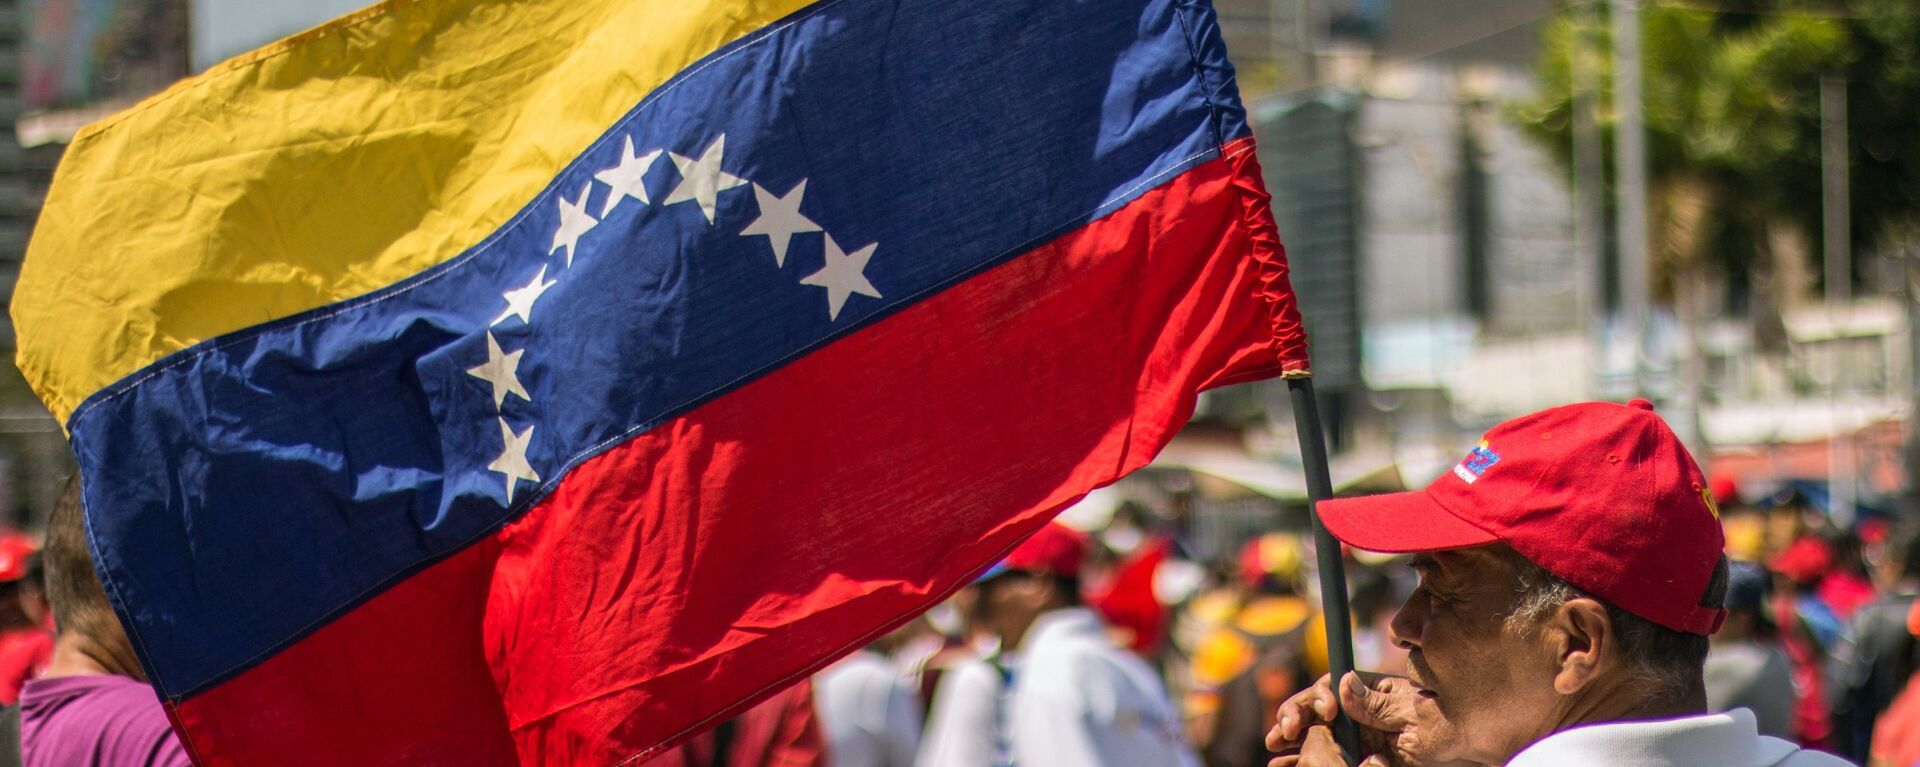 Un hombre con la bandera de Venezuela - Sputnik Mundo, 1920, 16.08.2021